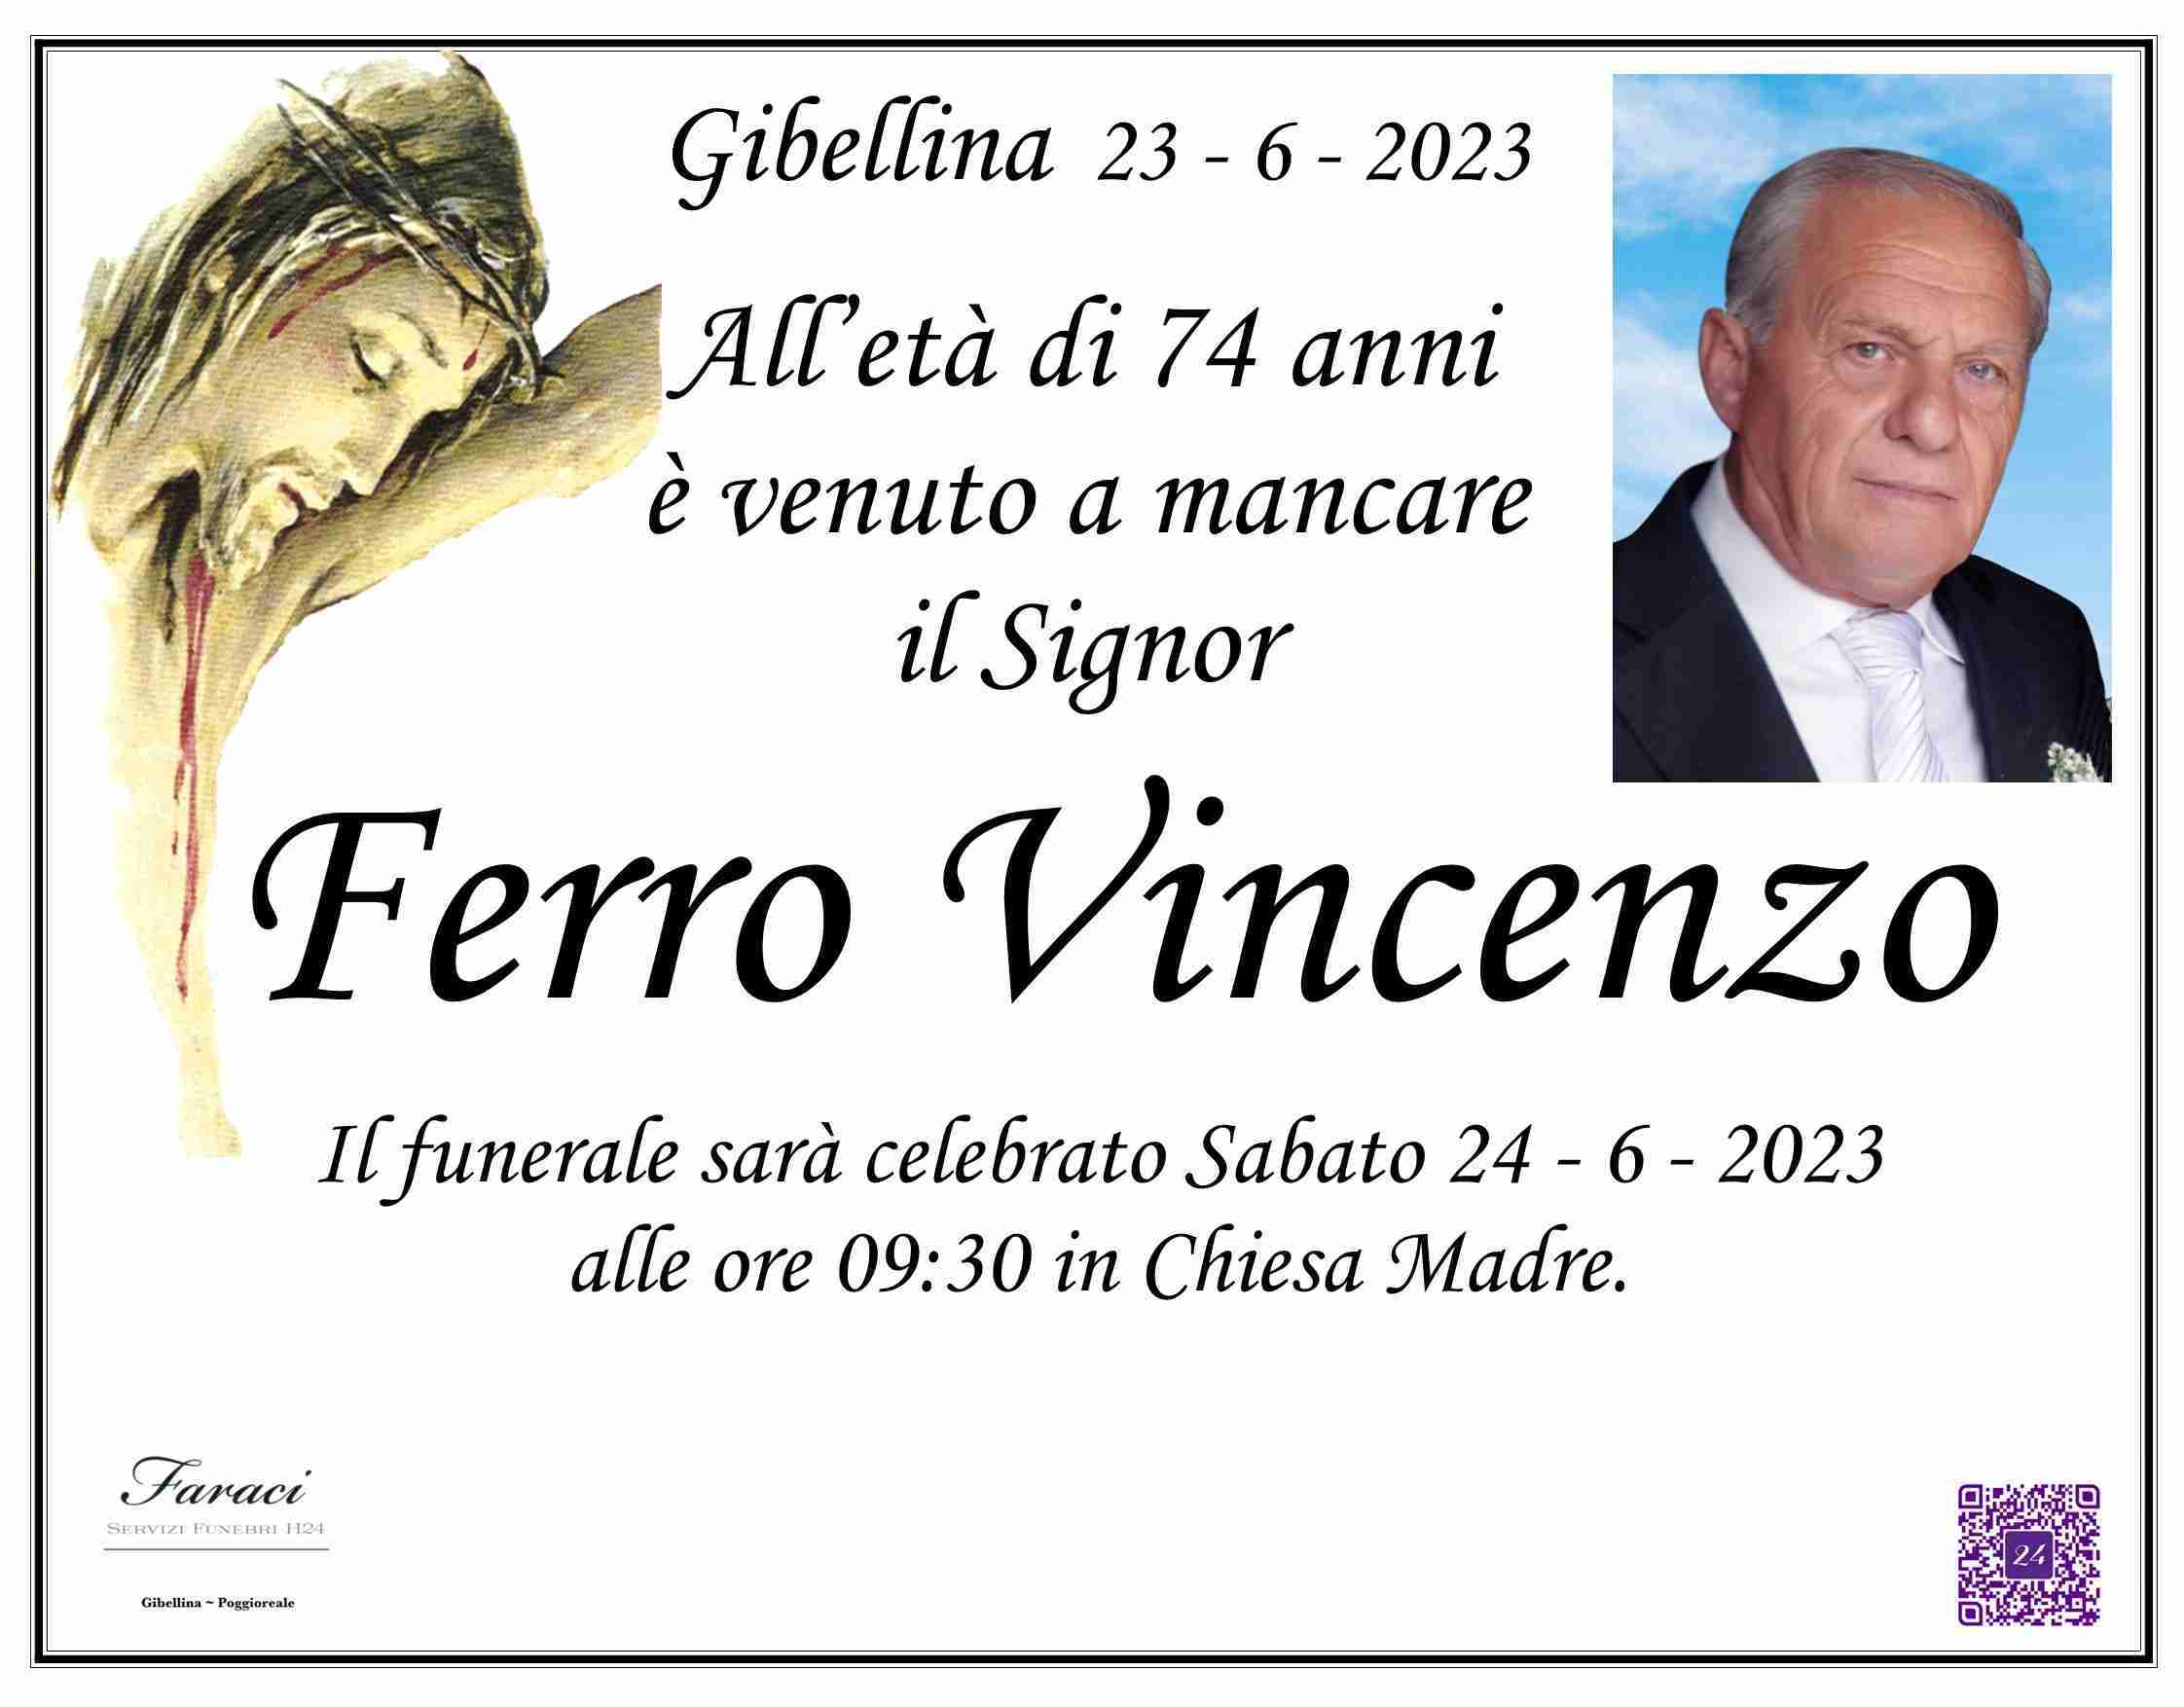 Vincenzo Ferro